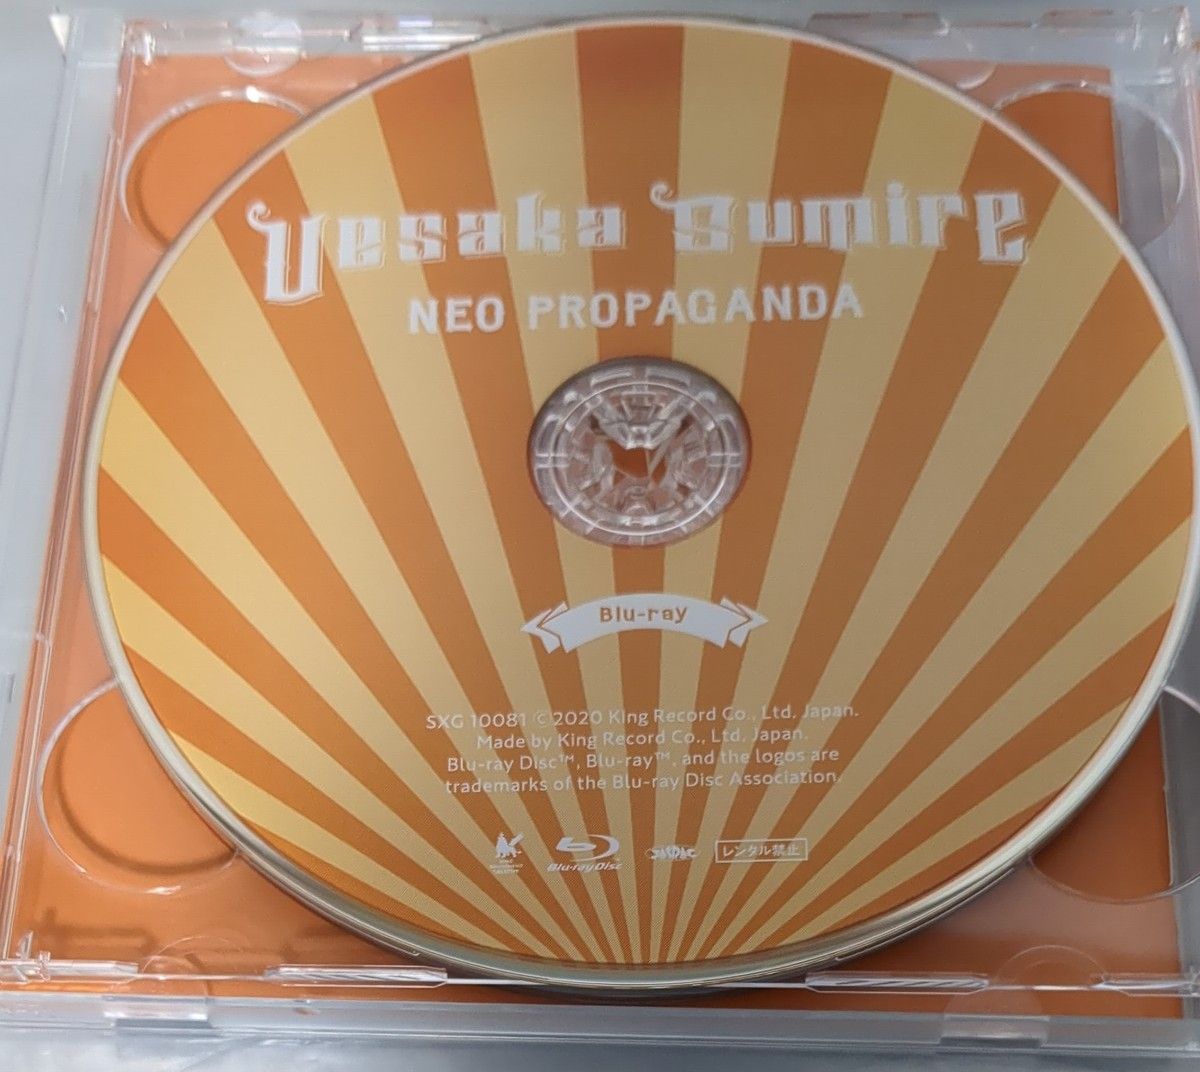 上坂すみれ 4thアルバム NEO PROPAGANDA 初回限定盤A CD+Blu-ray